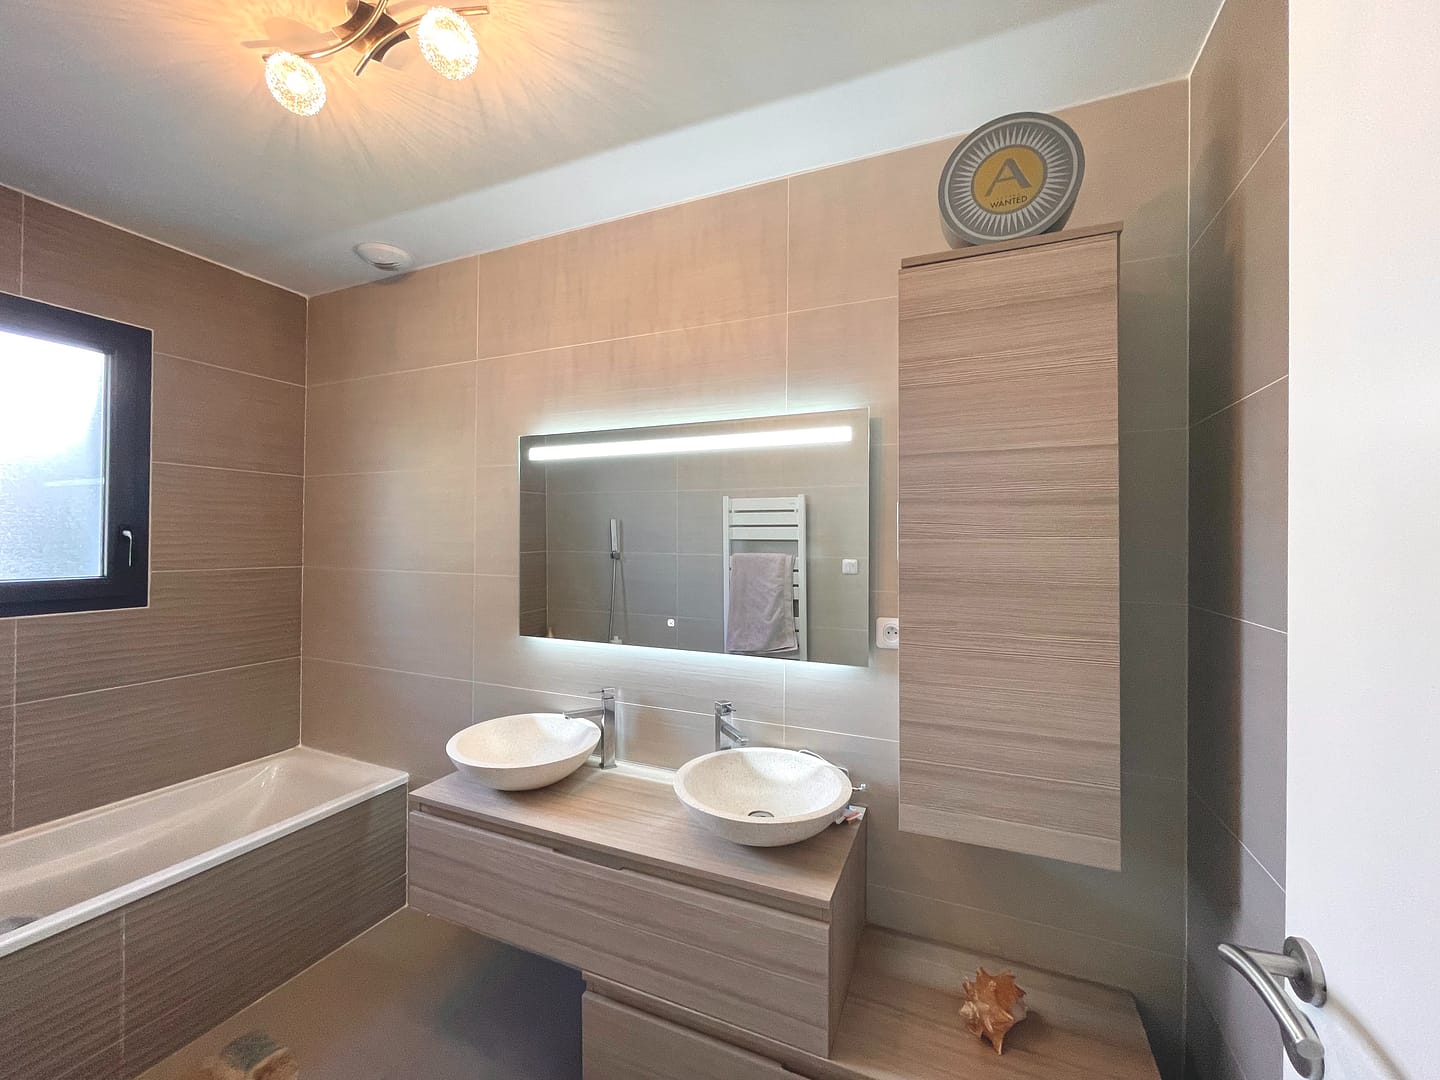 Salle de bain moderne avec baignoire et vasques design